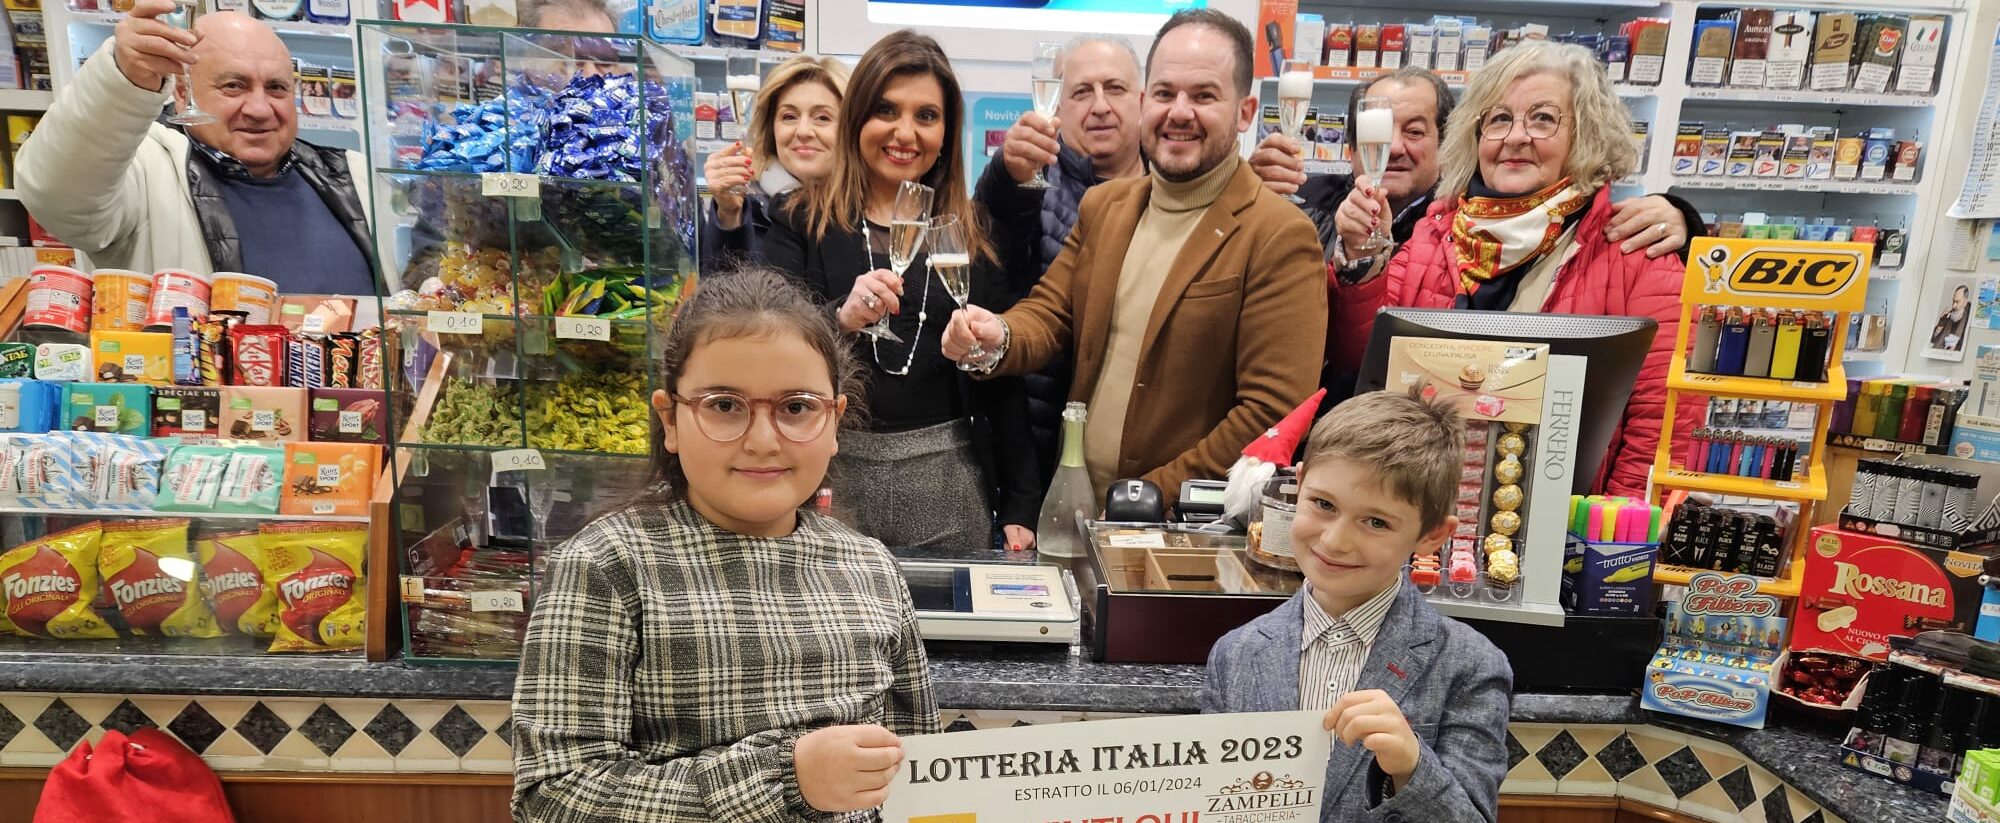 Lotteria Italia, alla tabaccheria Zampelli di San Giorgio del Sannio vinti 20mila euro